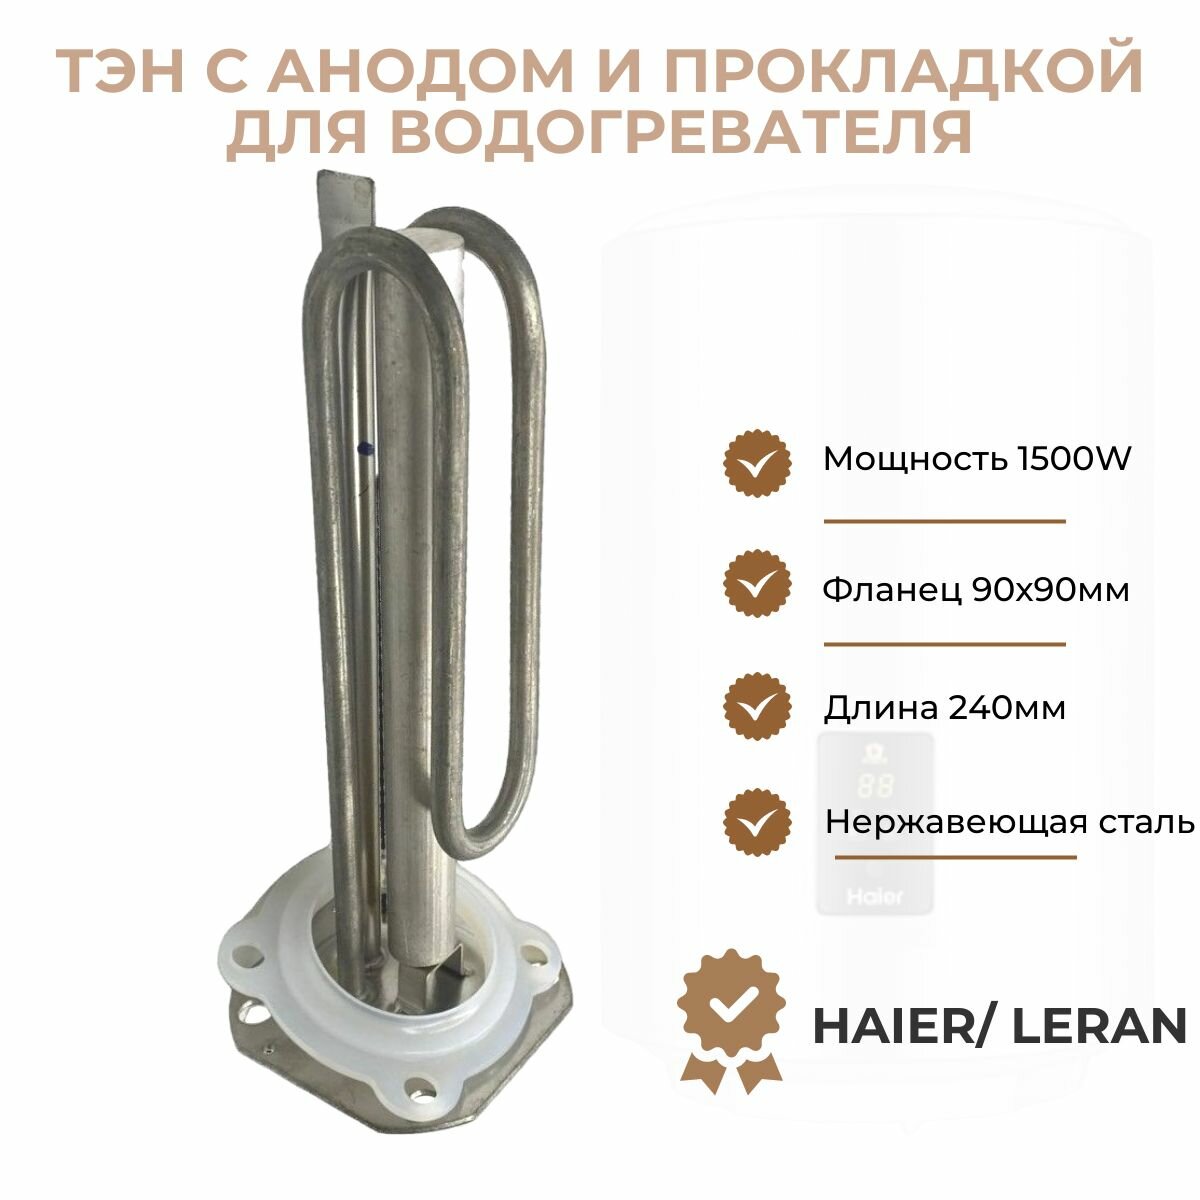 ТЭН для водонагревателя Haier/ Leran 1500W (L240мм фланец 90х90мм) + анод + уплотнитель